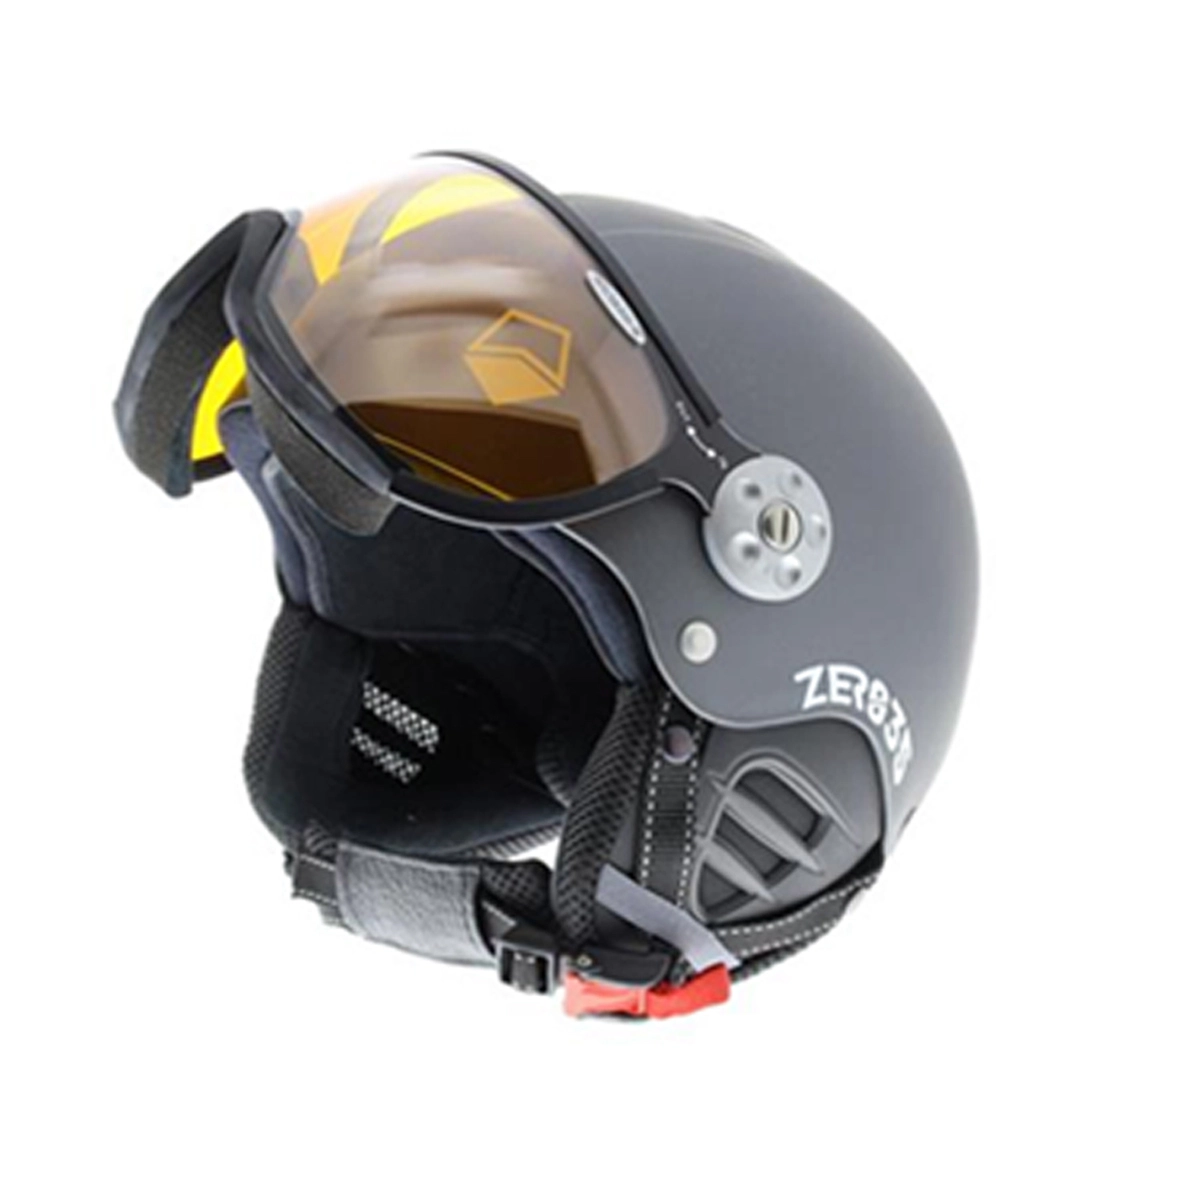 produceren Kostuums verklaren HMR H3 Basic Ski Helm - Helmen - Accessoires - Wintersport - Intersport van  den Broek / Biggelaar